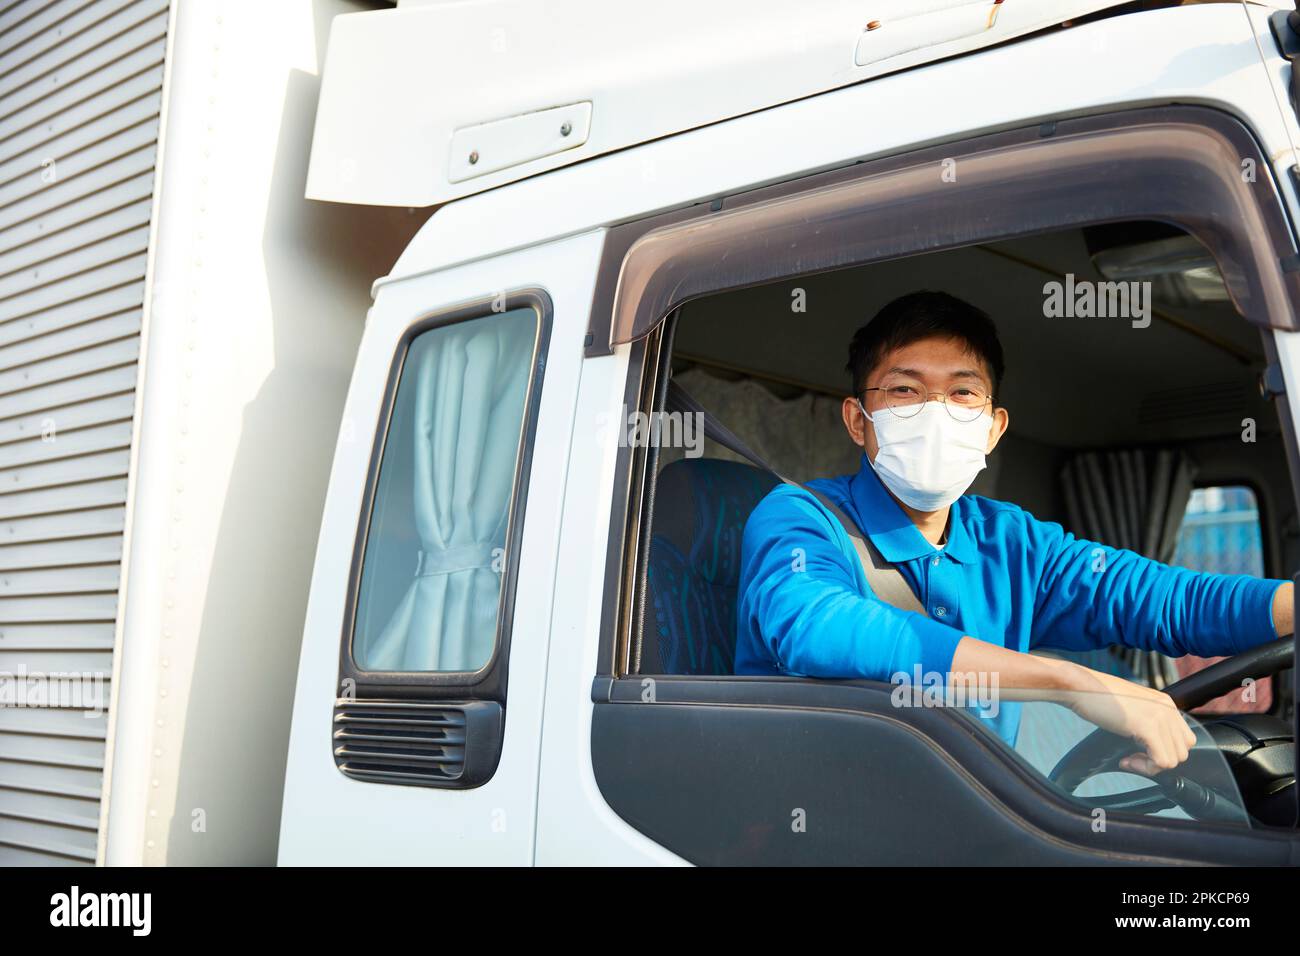 Homme dans les vêtements de travail et masque conduisant un camion Banque D'Images